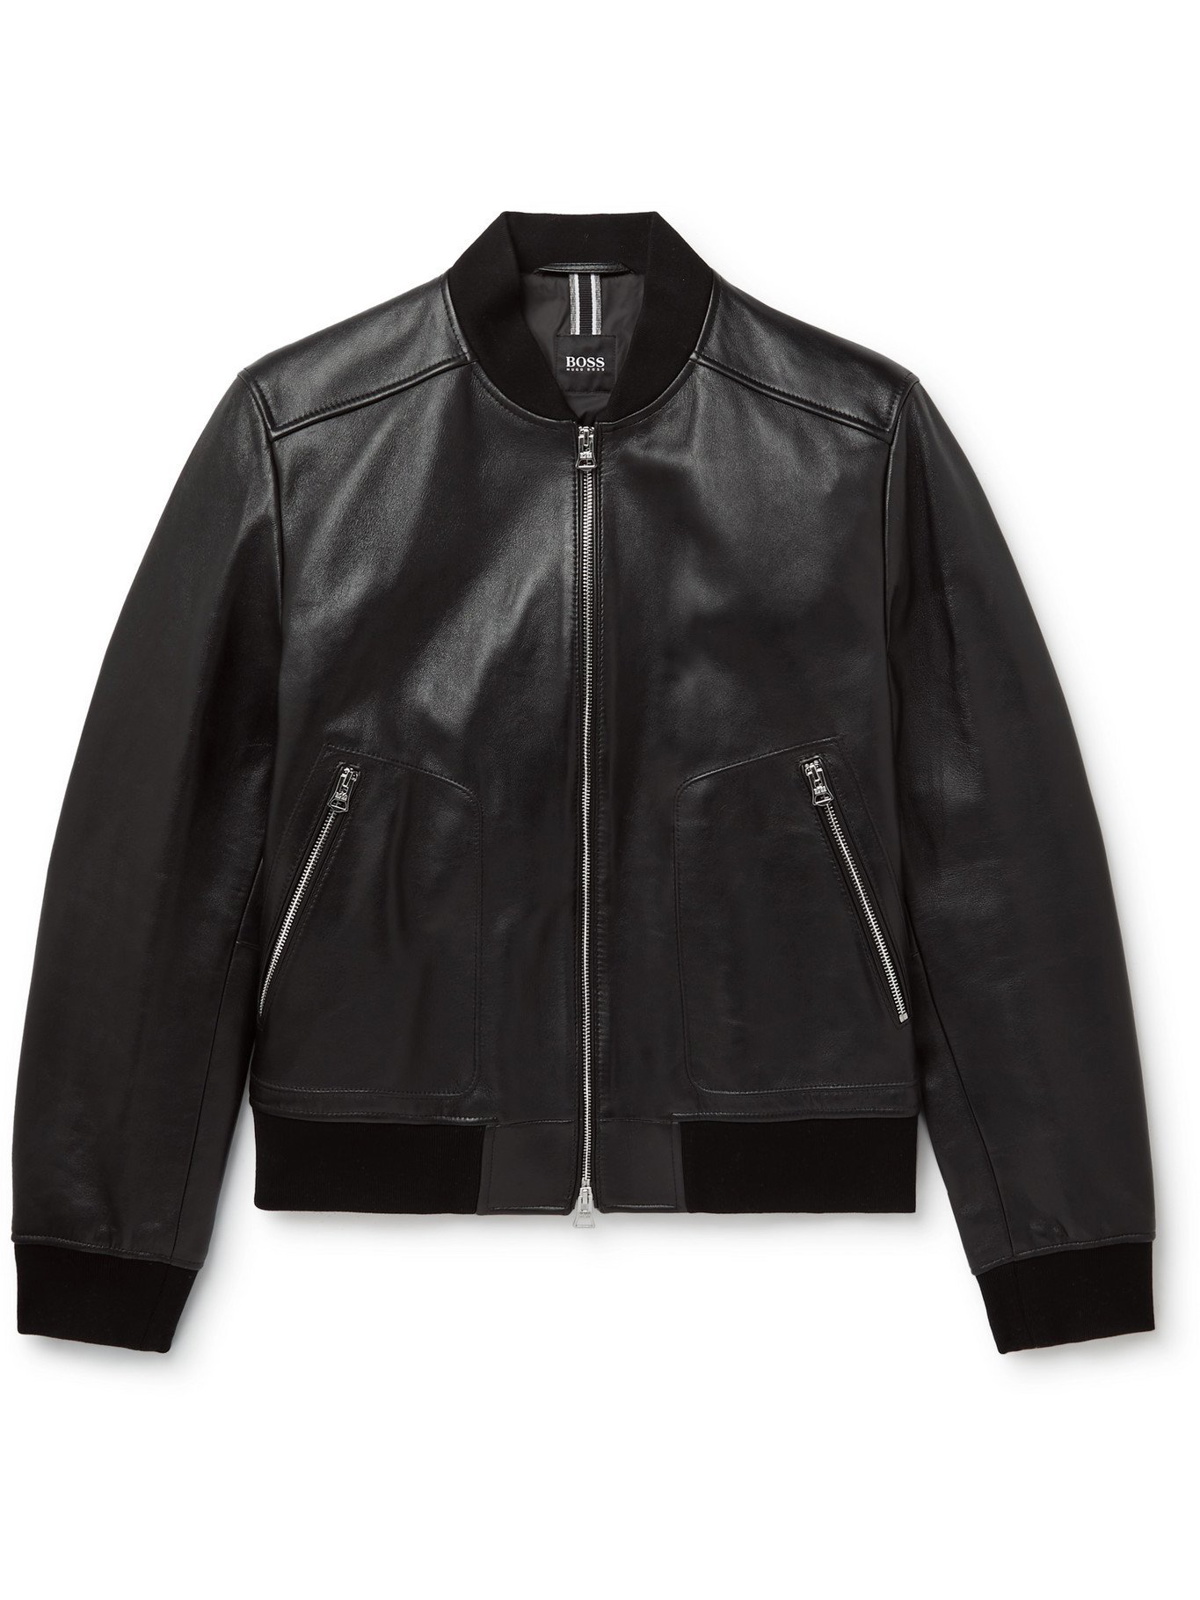 HUGO BOSS - Leather Jacket - Black - 44 Hugo